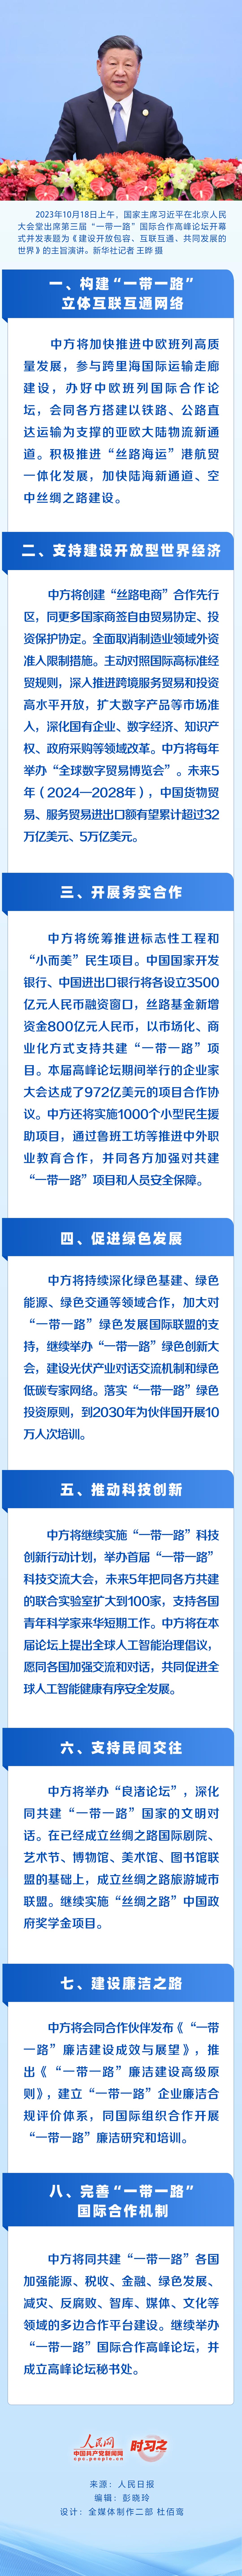 时习之丨习近平宣布中国支持高质量共建“一带一路”的八项行动